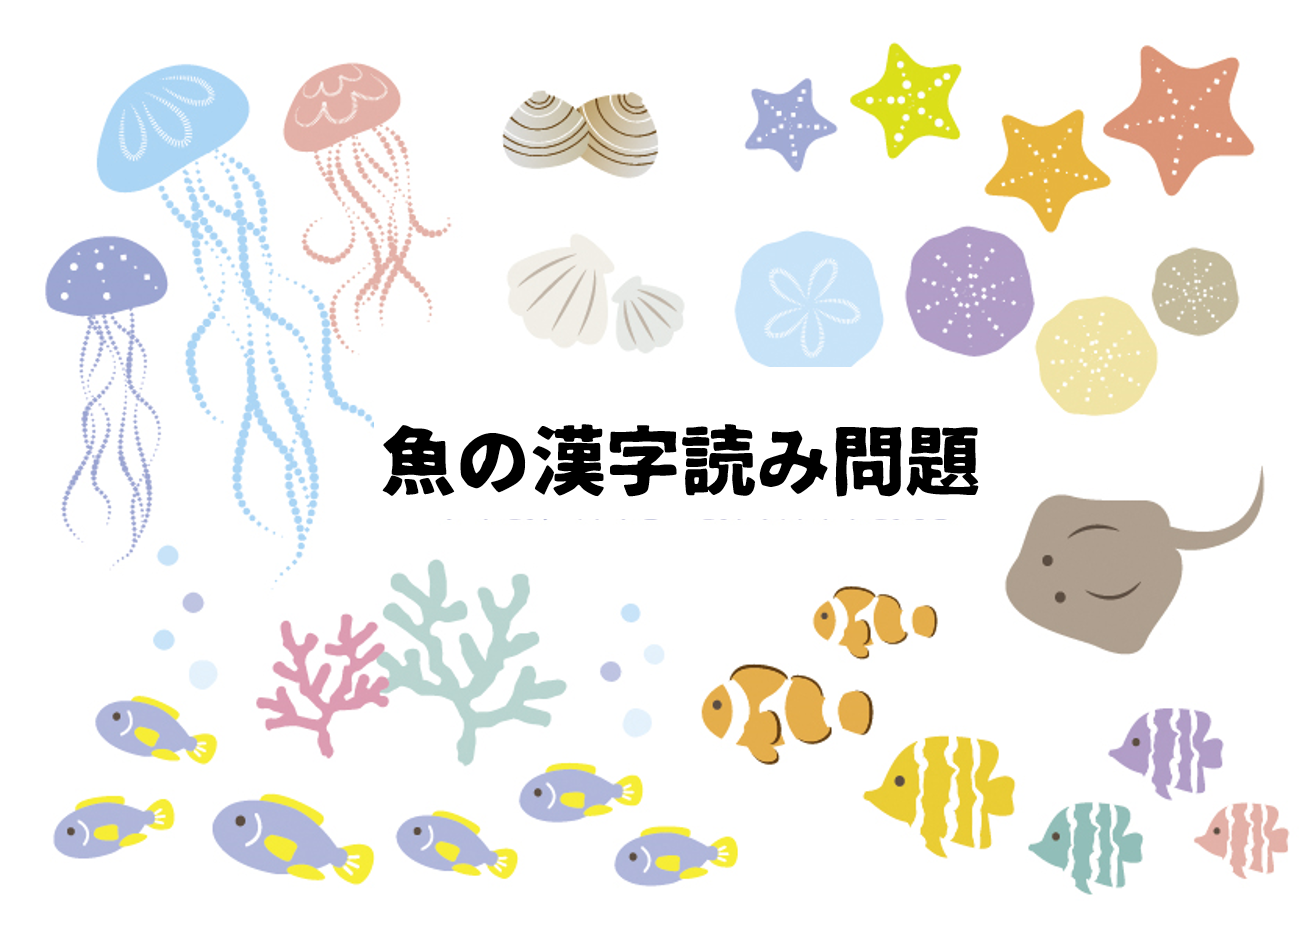 高齢者向け脳トレ 魚の漢字読みクイズ全30問 あなたは何問解ける みんなのお助け Navi 高齢者向けレク 脳トレクイズ紹介サイト